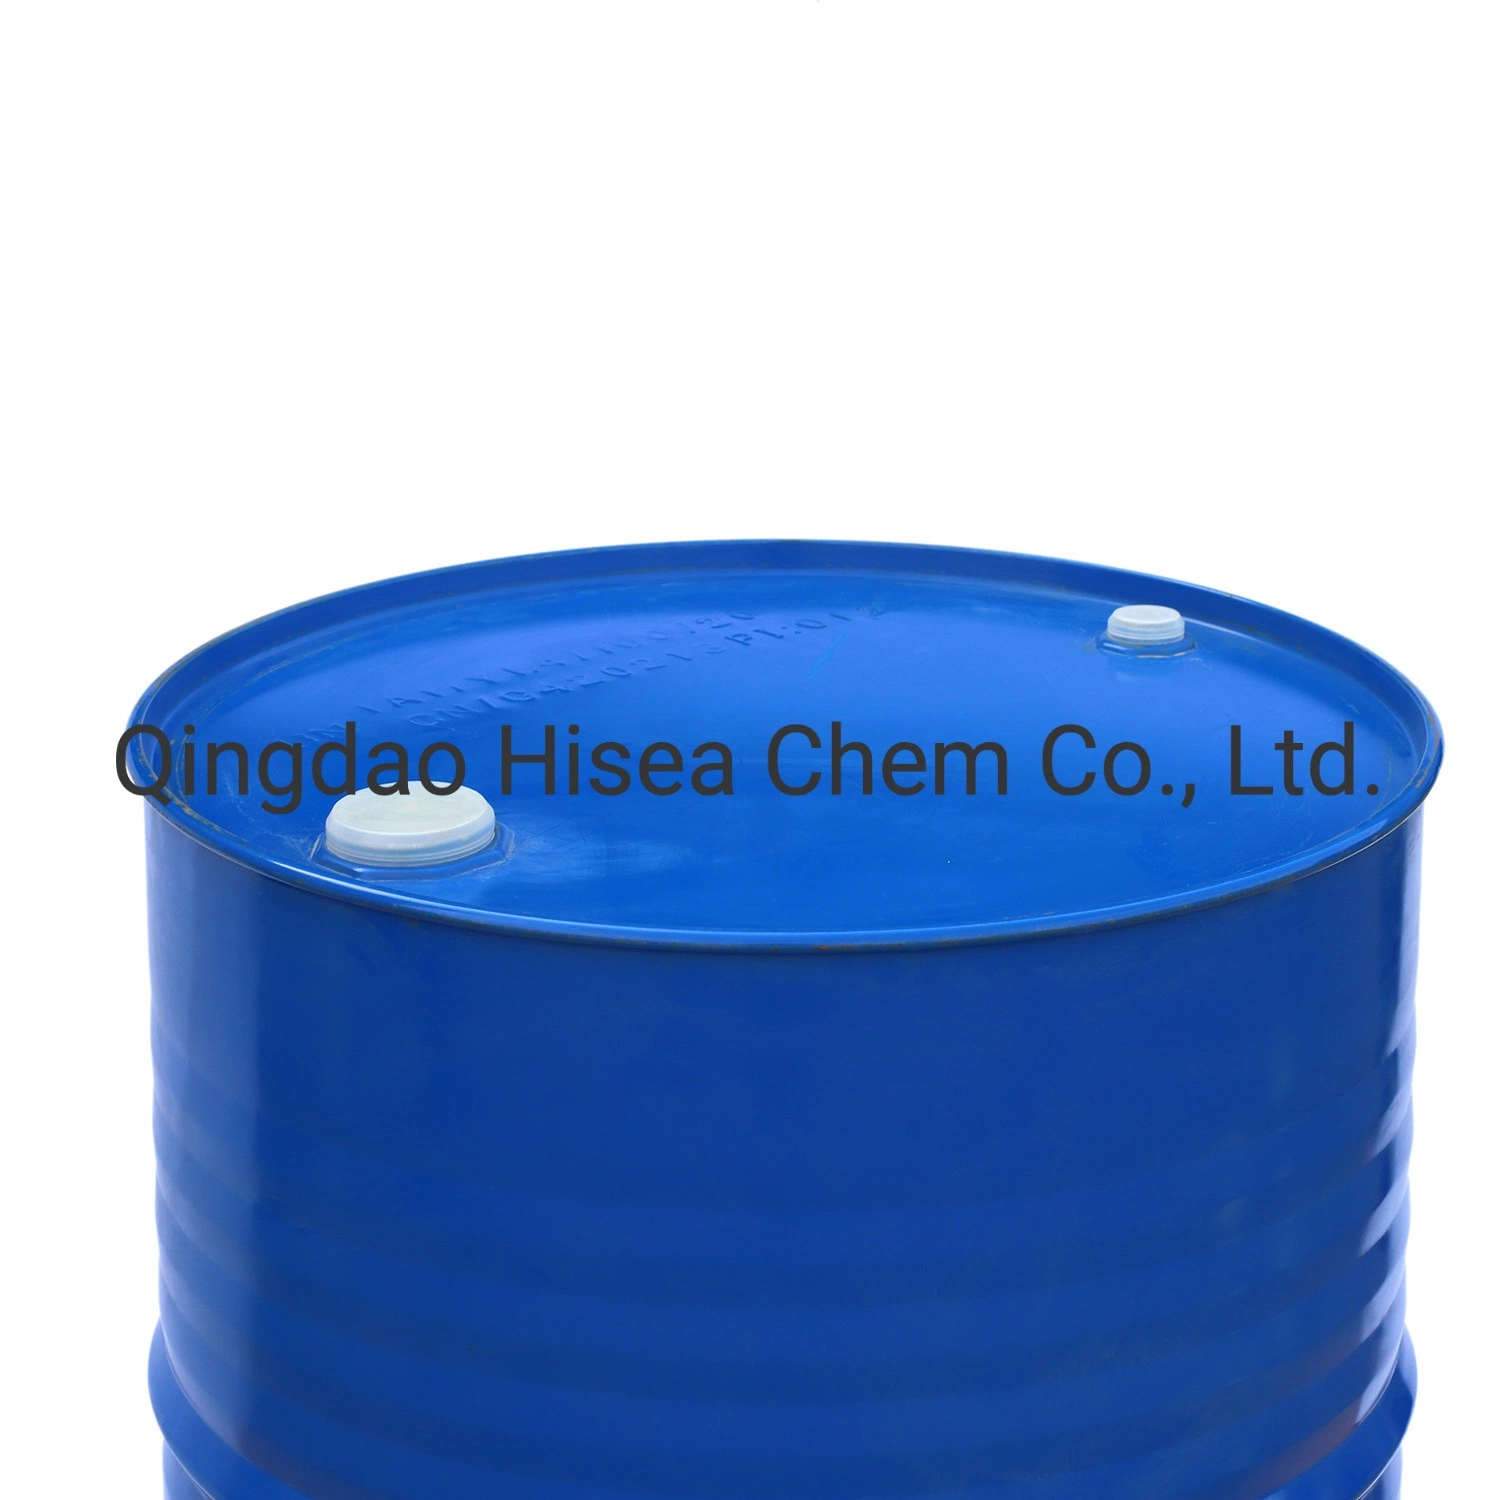 Alta calidad de acetato de etilo en un 99% de grado industrial Min CAS#141-78-6